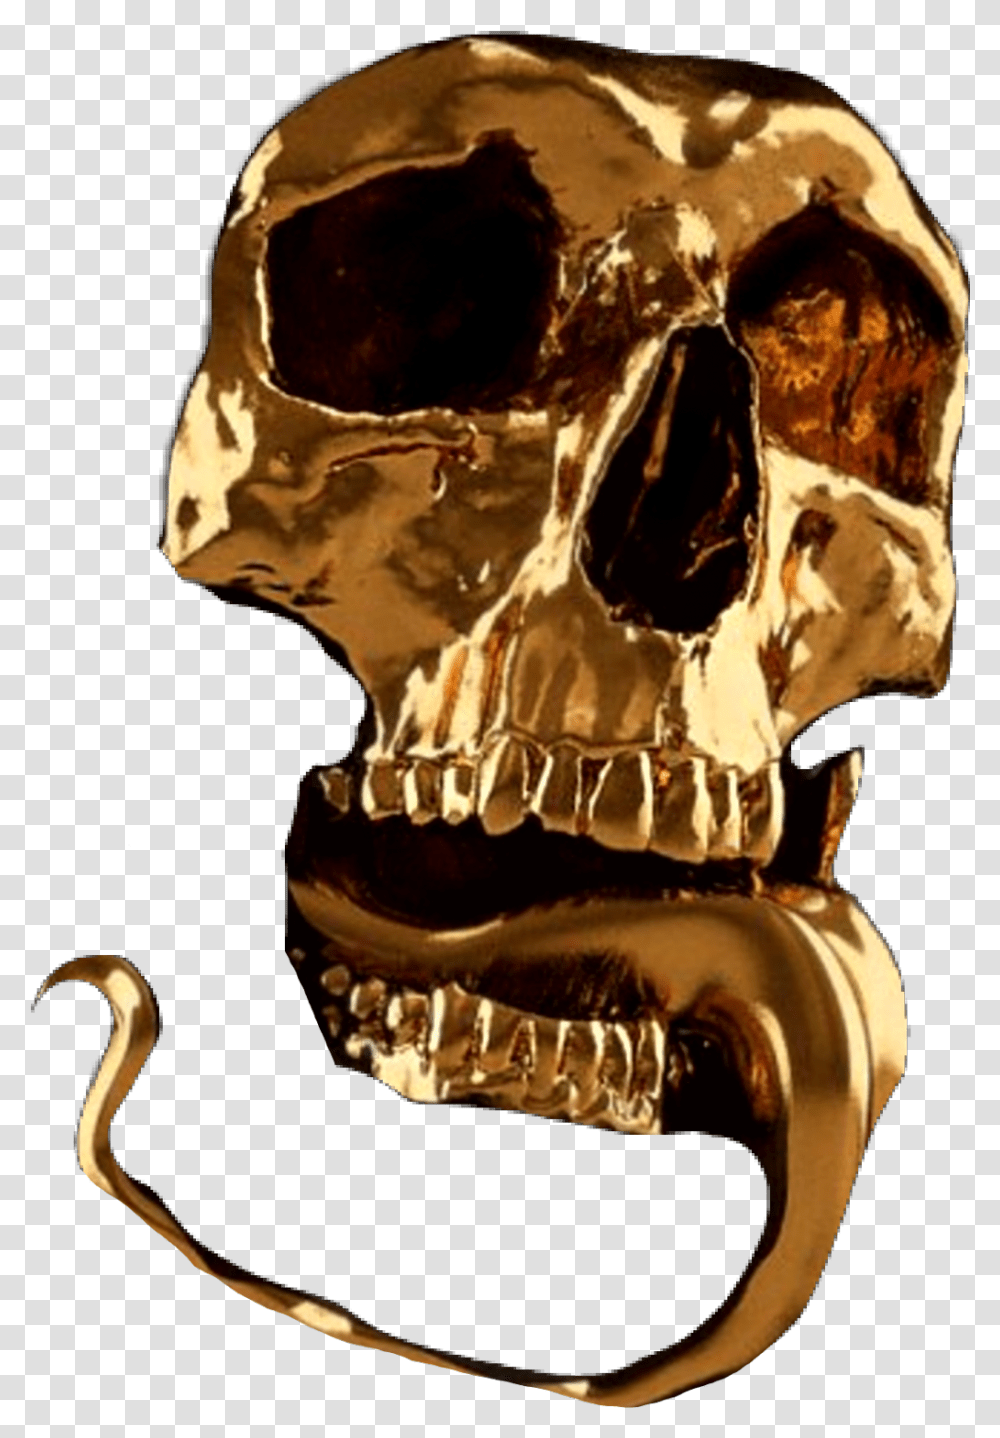 Gold Face Skullface Skull Oro Death Skeletal Skull Black And Gold, Skeleton Transparent Png